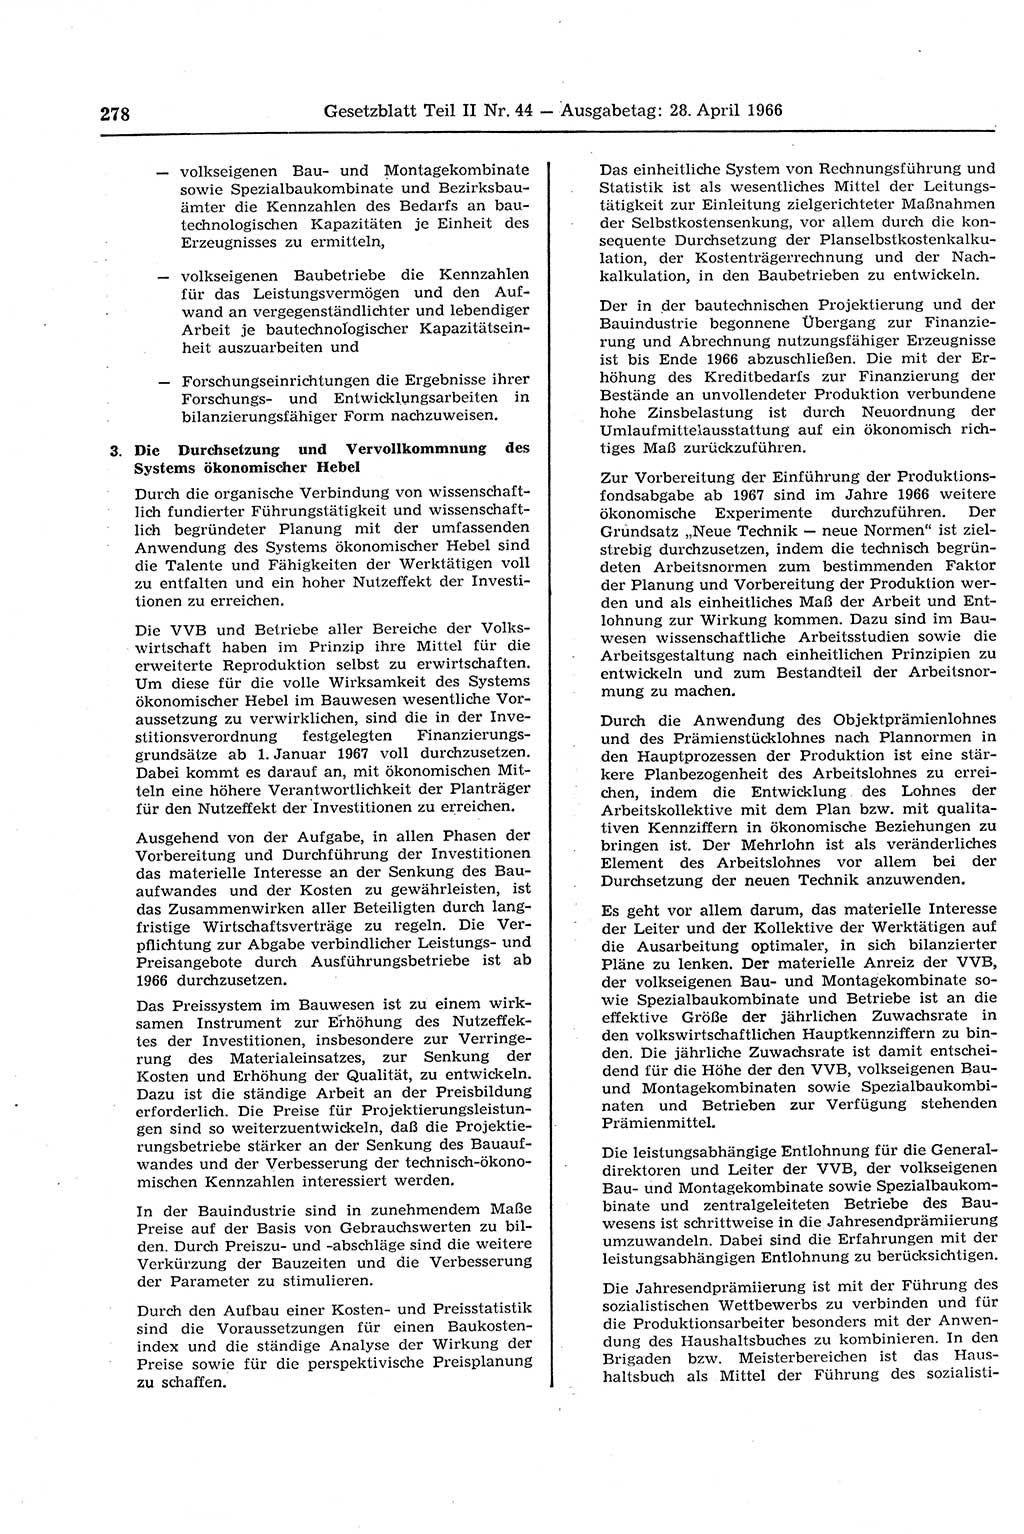 Gesetzblatt (GBl.) der Deutschen Demokratischen Republik (DDR) Teil ⅠⅠ 1966, Seite 278 (GBl. DDR ⅠⅠ 1966, S. 278)